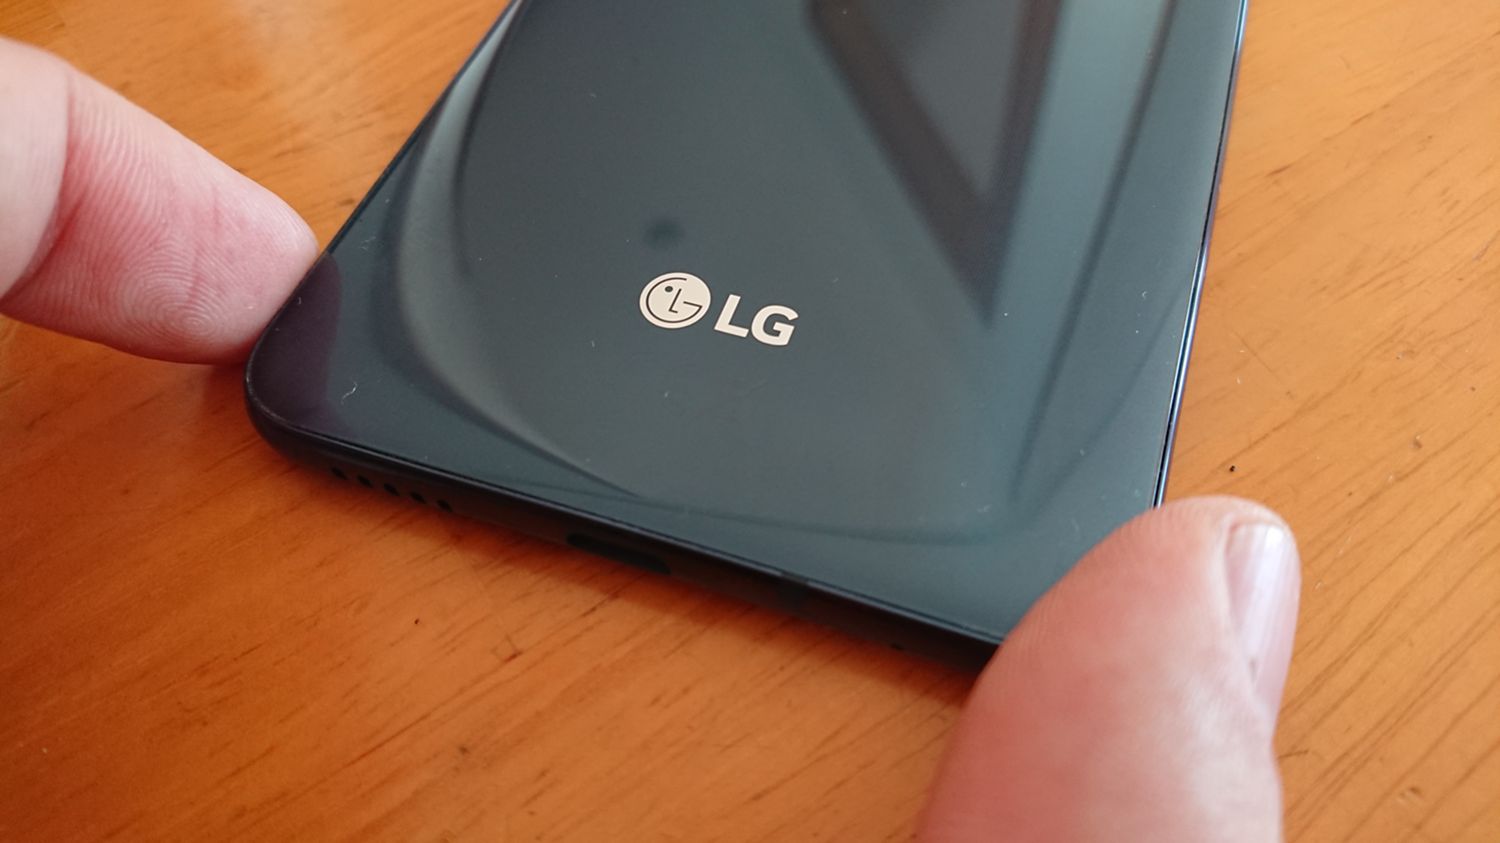  5 cambios que esperamos en el LG V40 ThinQ respecto al LG V30